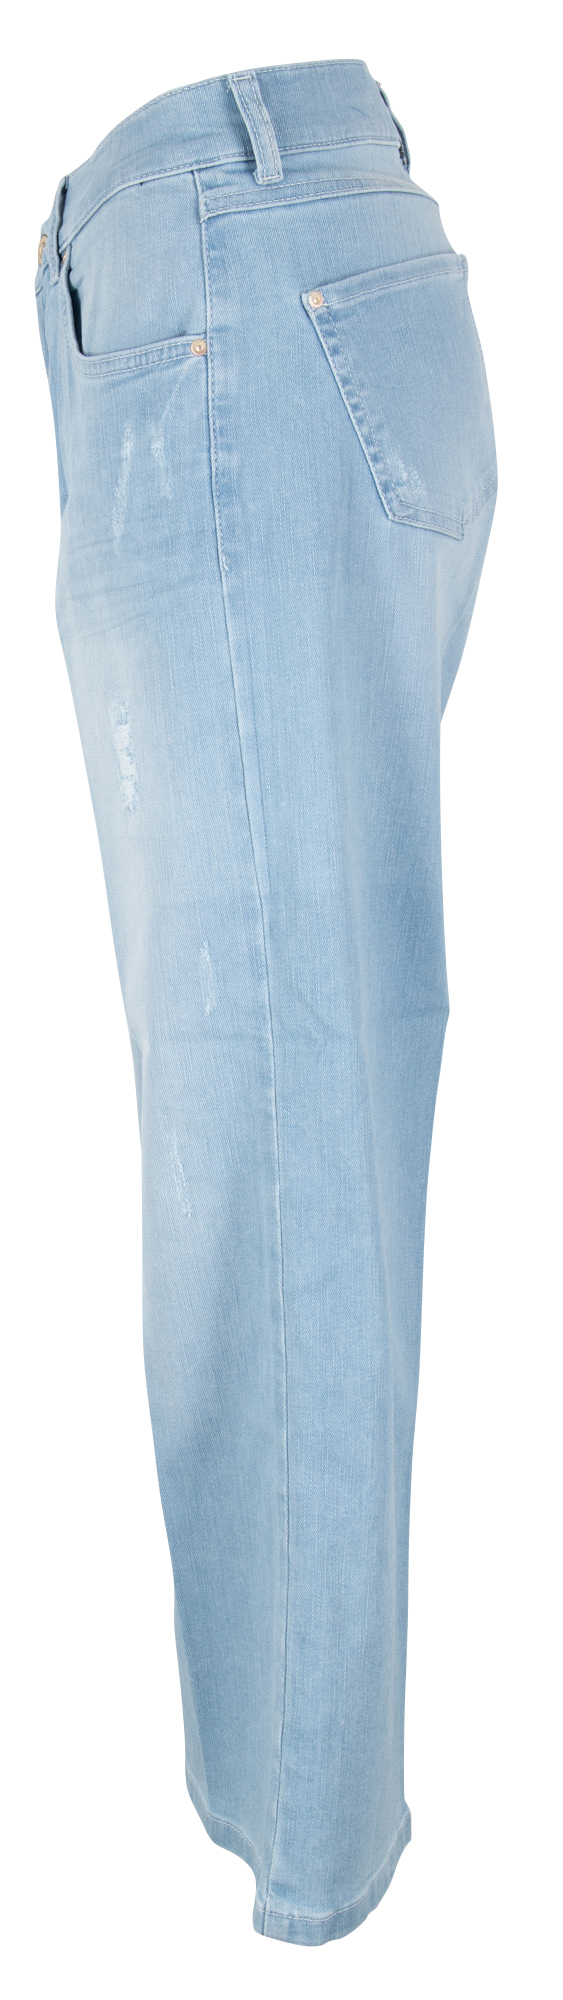 blau kaufen Jeans bei Damen Angels Linn Stretch 7/8 Damen Jeans bequem online